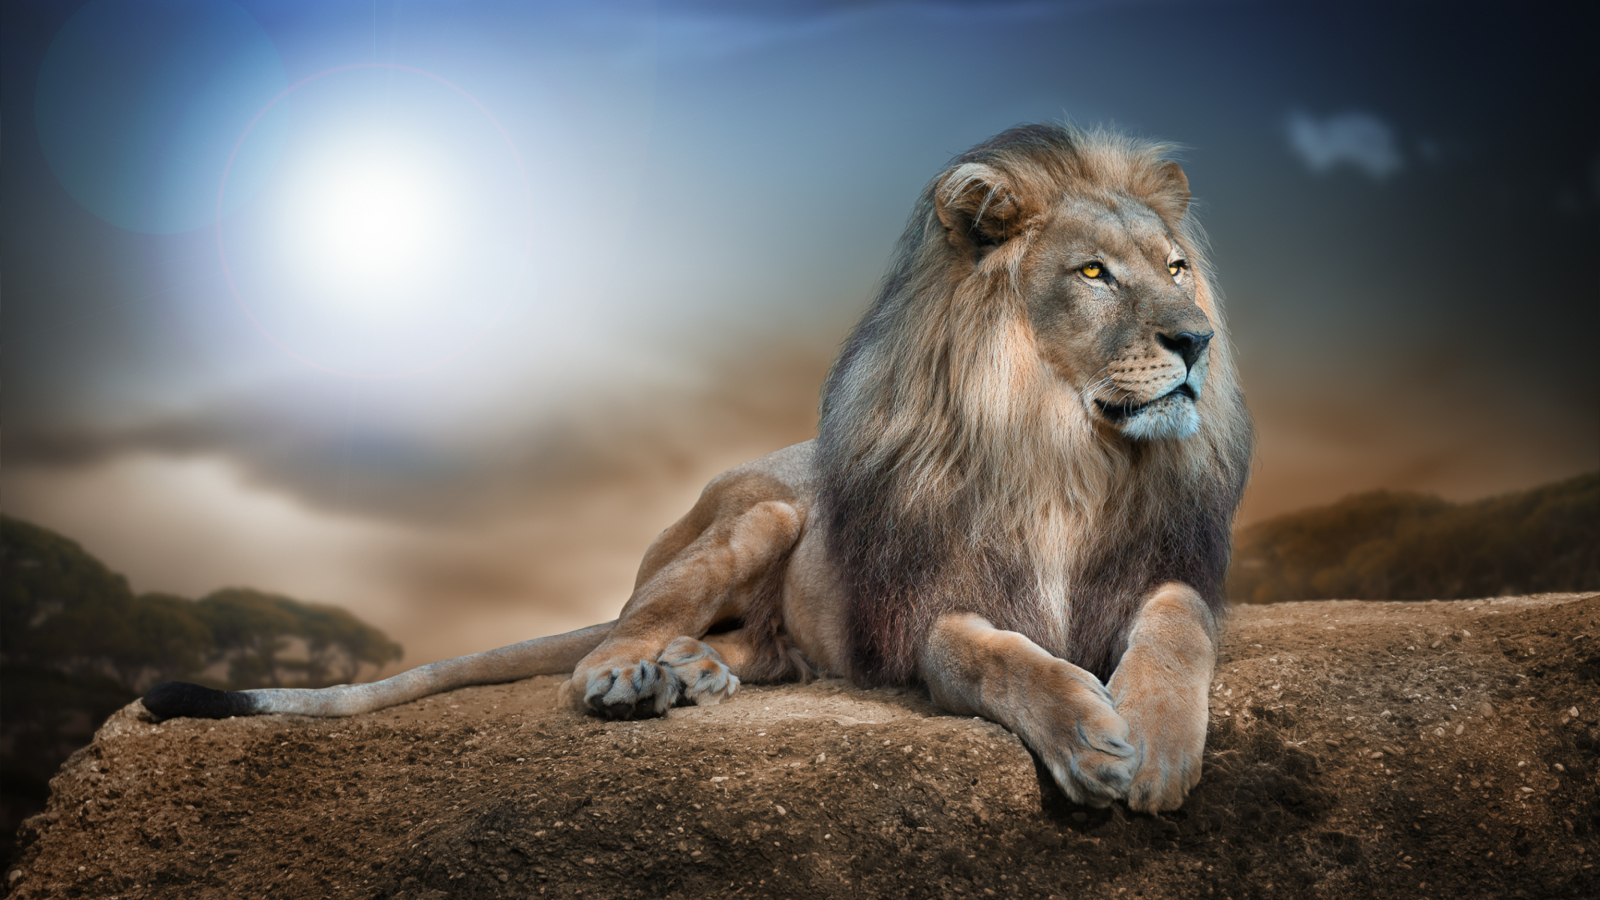 King Lion wallpaper 1600x900